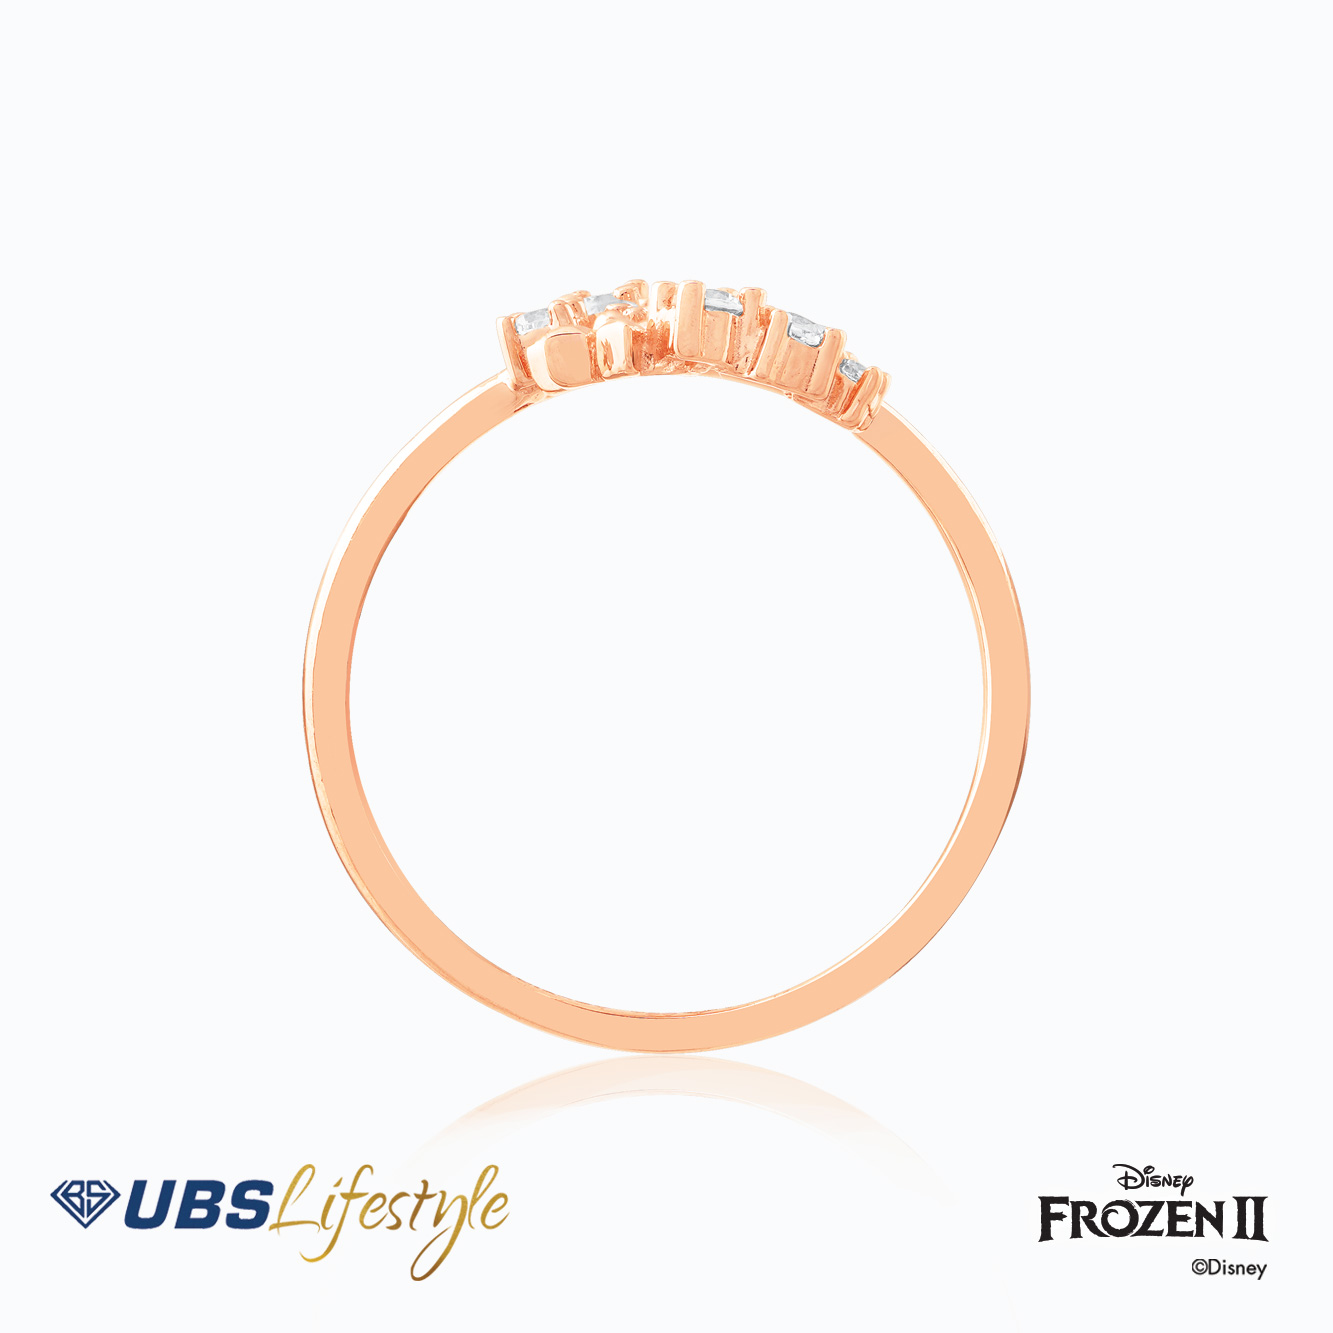 UBS Cincin Emas Disney Frozen - Ccy0159R - 17K